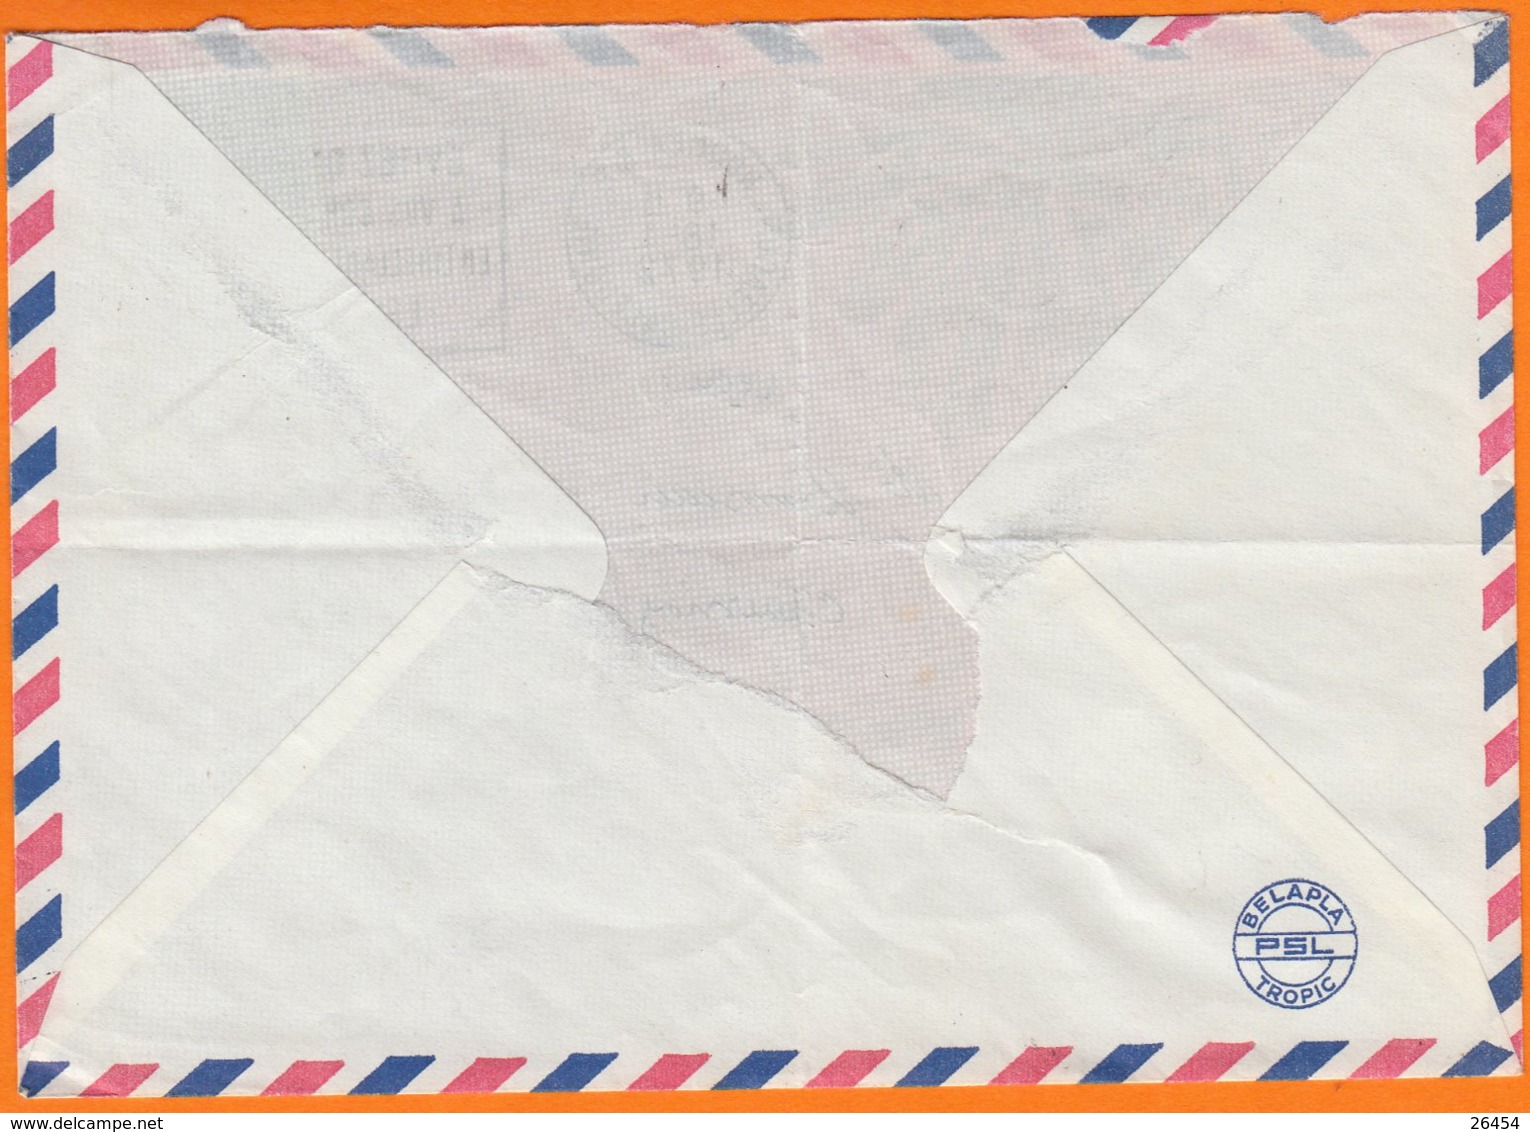 Enveloppe Illustrée De NOUMEA R.P.  Le 18 1 1972 à 23F " Jeux Du Pacifique Sud " Pour 80 QUESNOY Sur SOMME - Briefe U. Dokumente